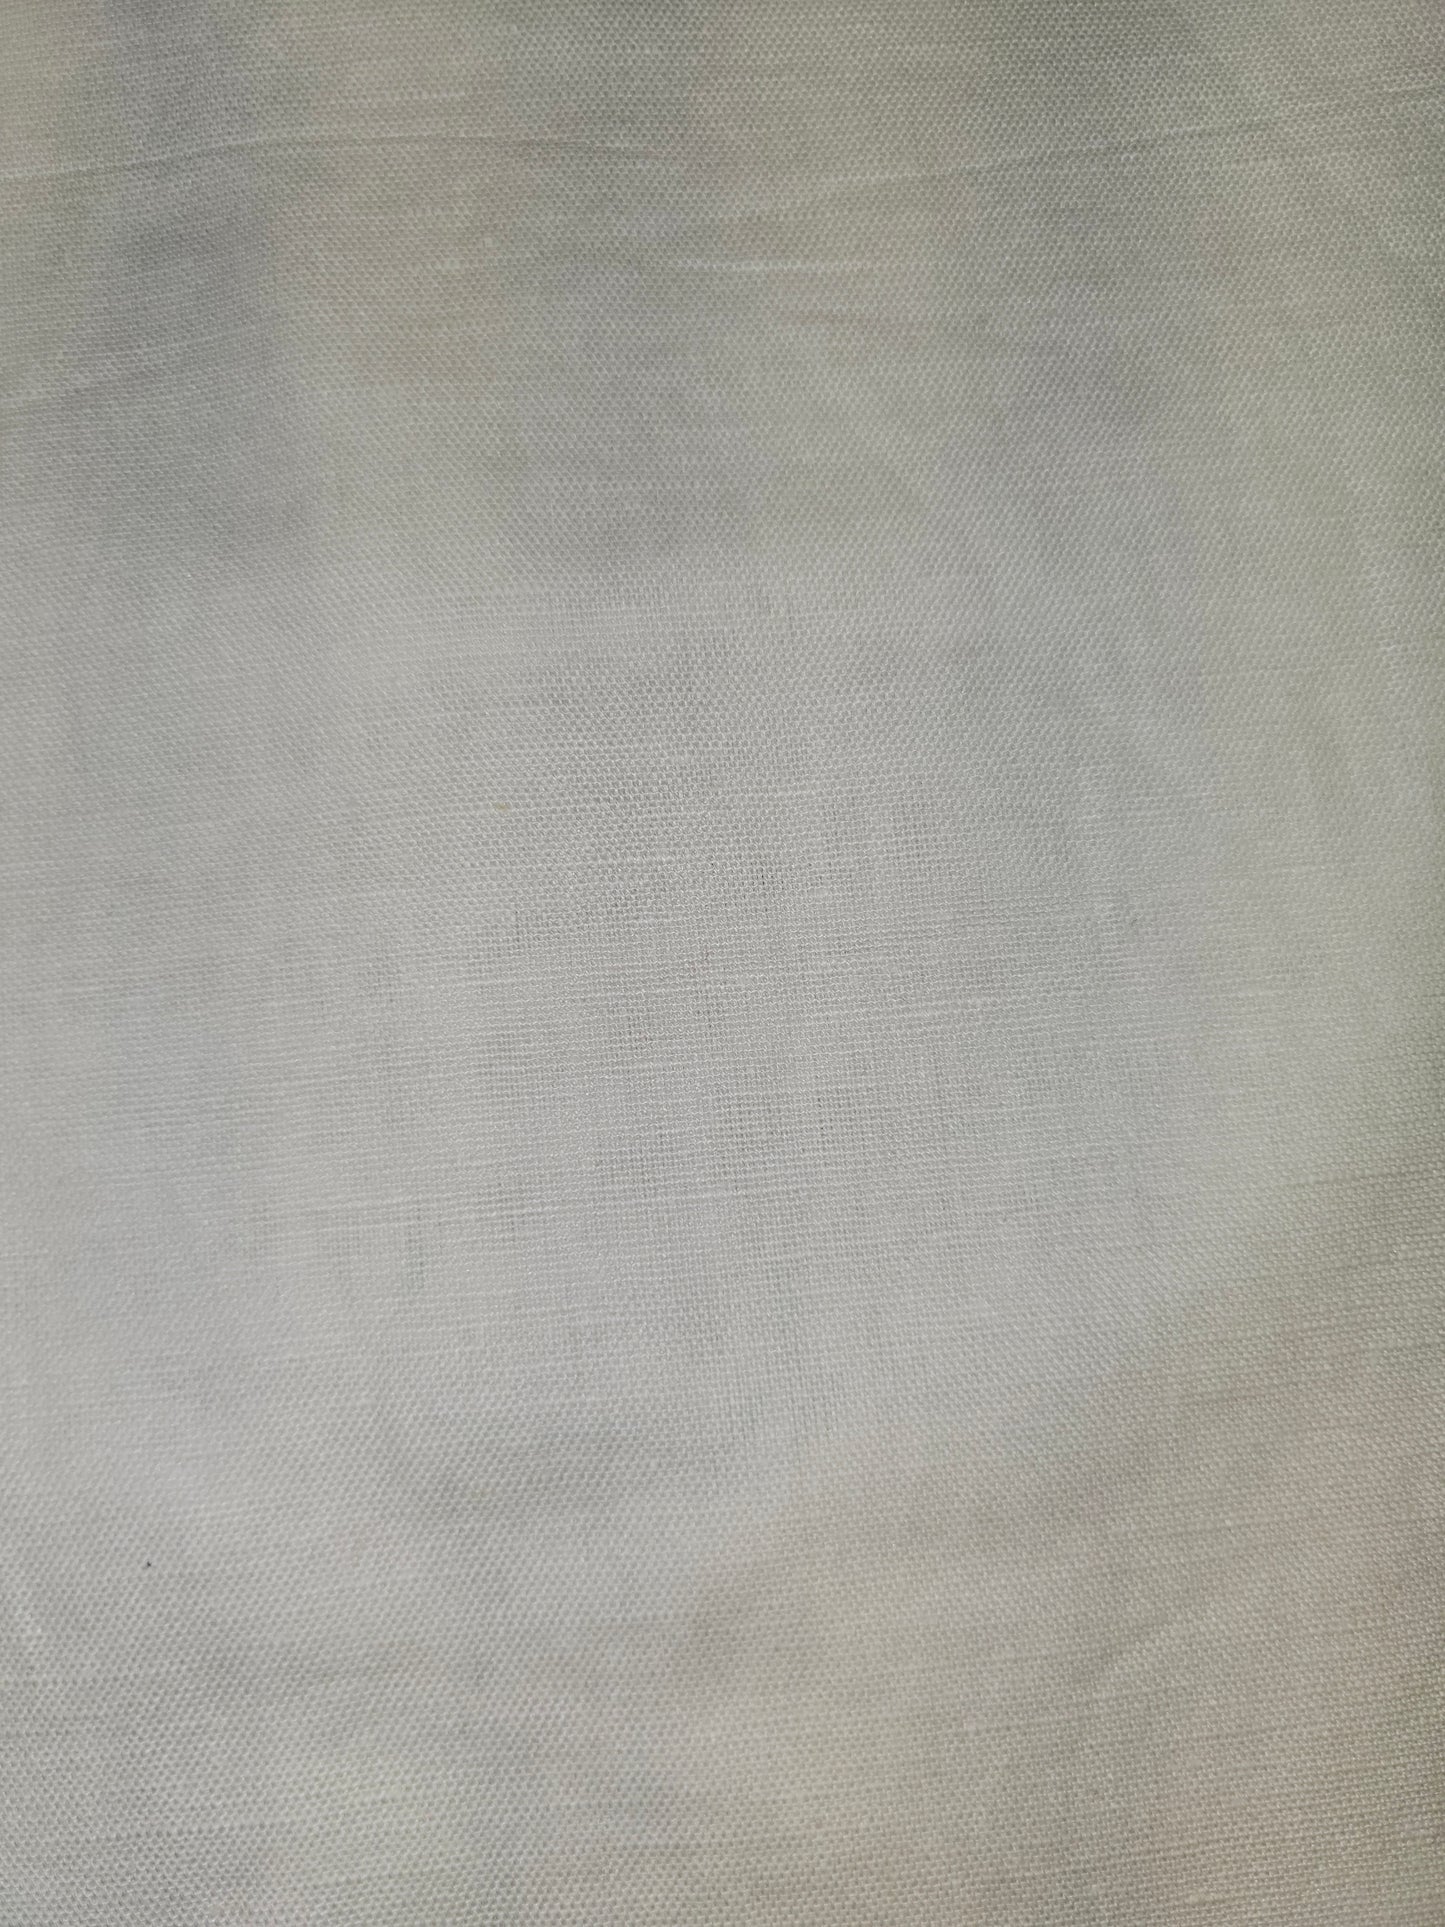 Aabandh's Sleevless Top - Parn (Cotton Linen)